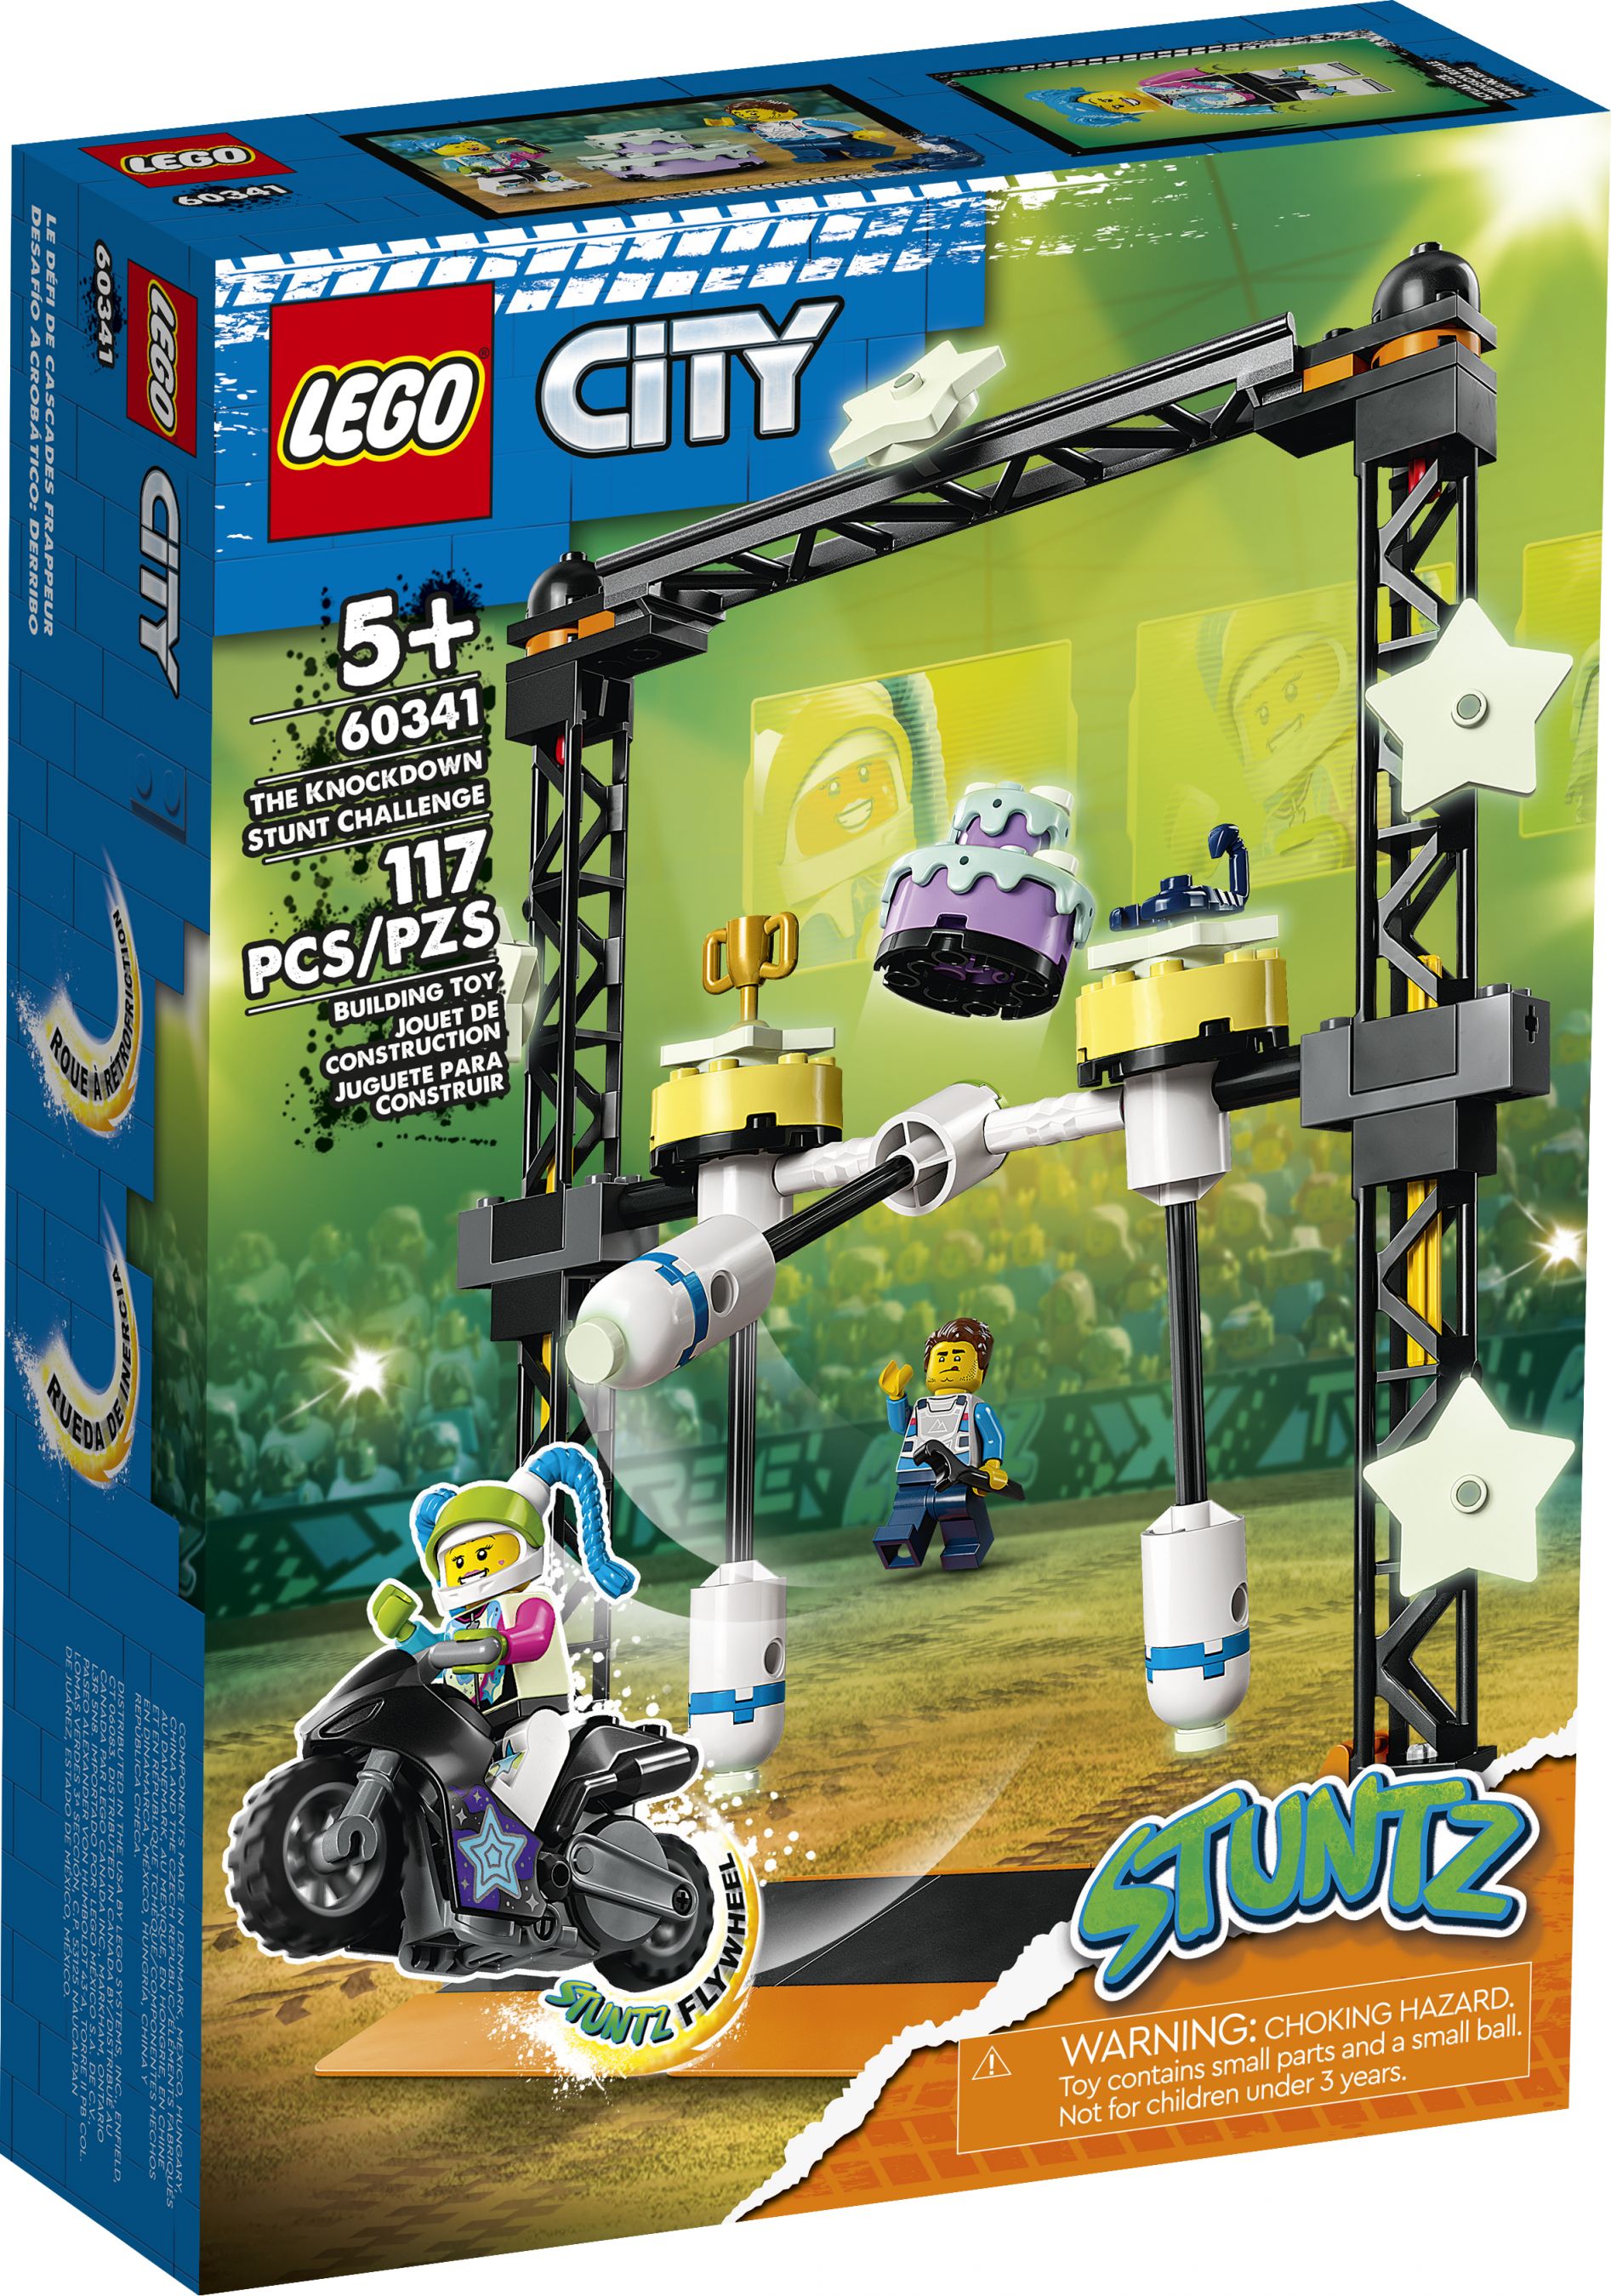 LEGO City 60341 Umstoß-Stuntchallenge LEGO_60341_Box1_v39.jpg